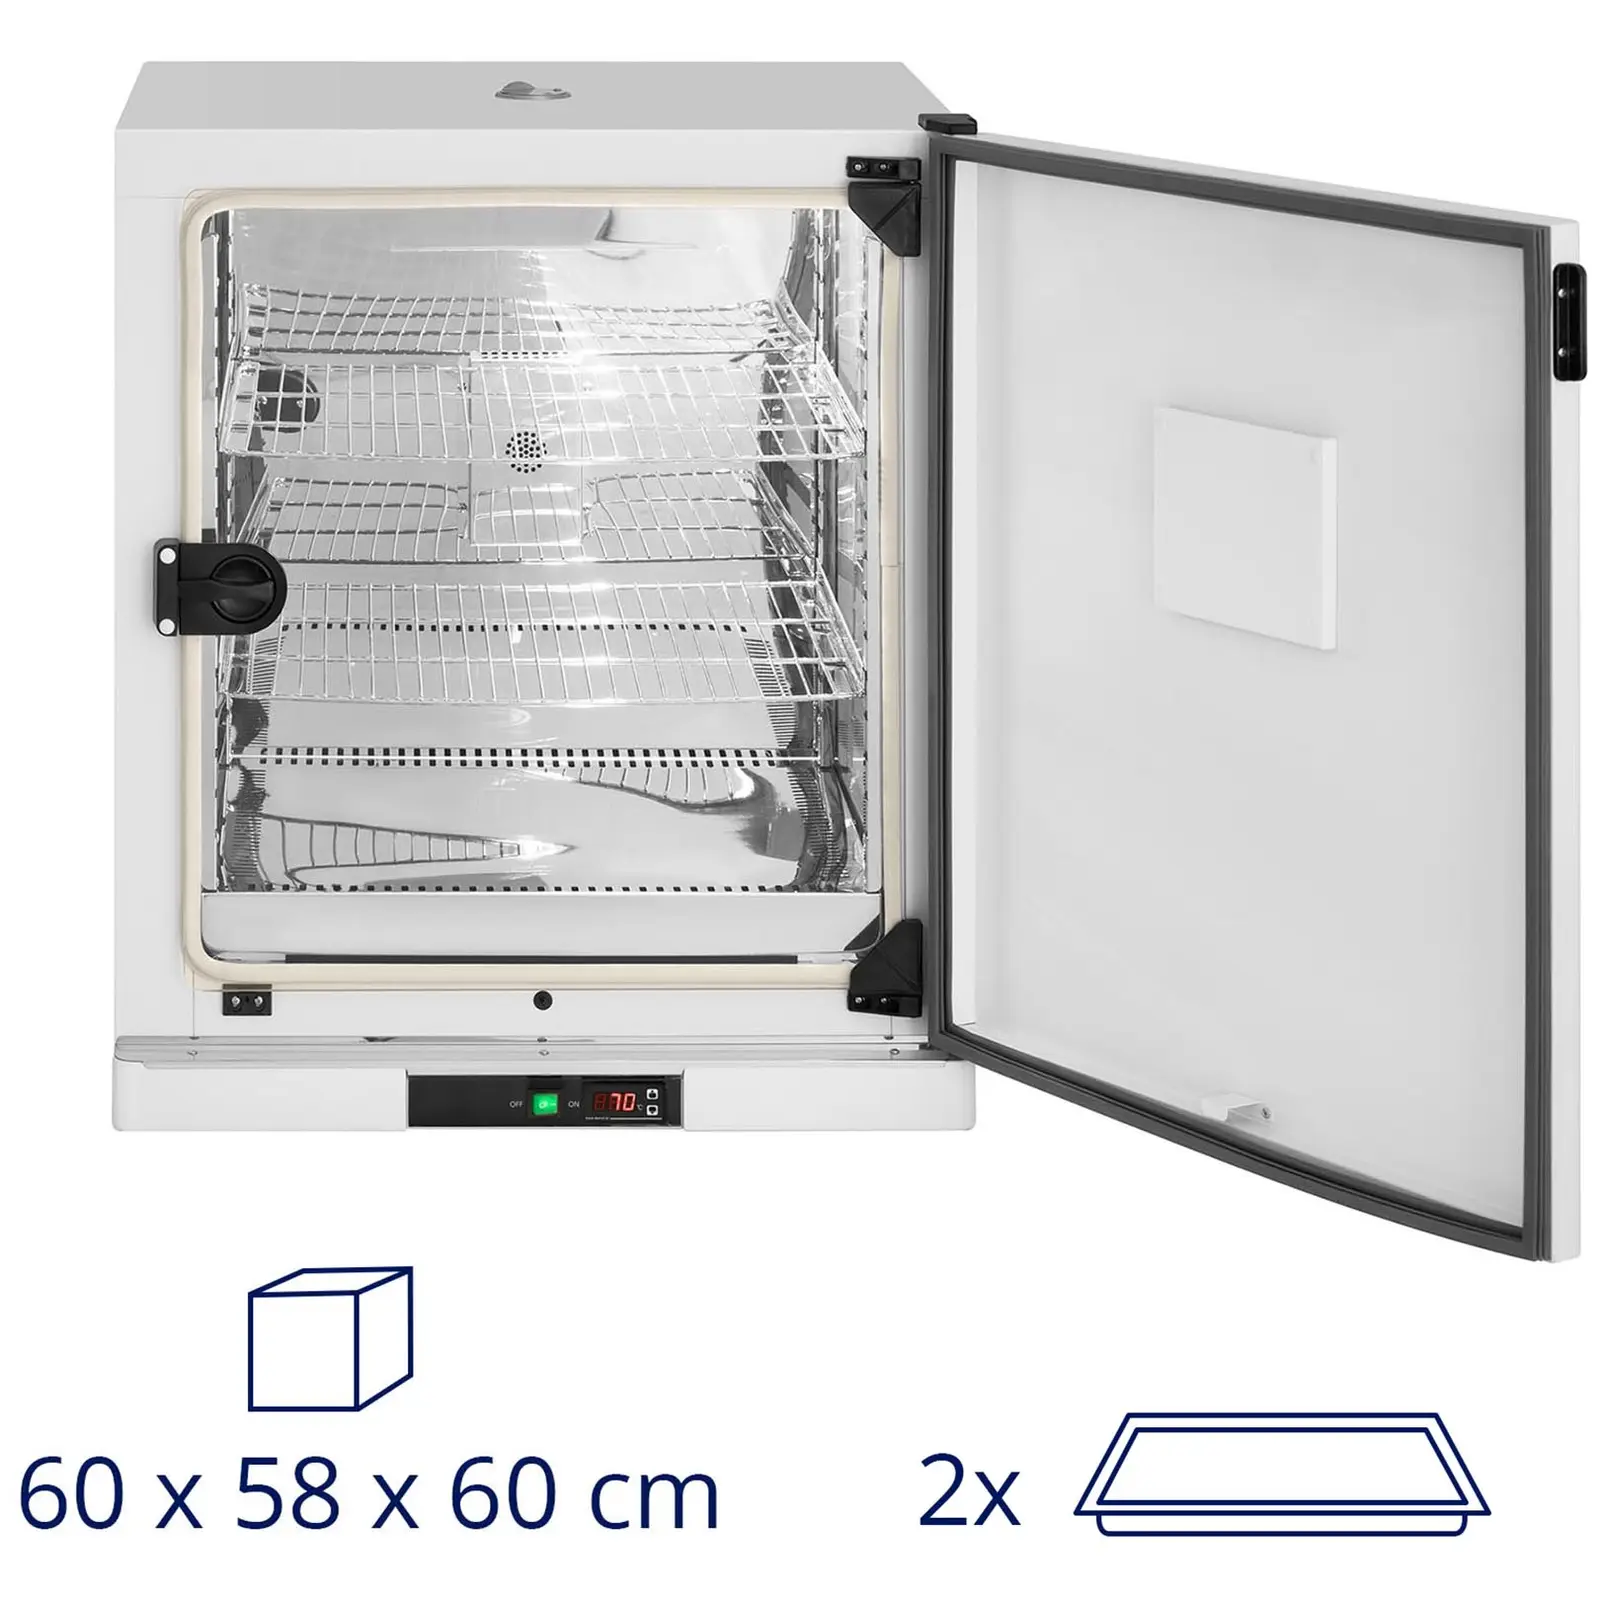 Inkubator laboratoryjny - do 70°C - 210 l - wymuszony obieg powietrza